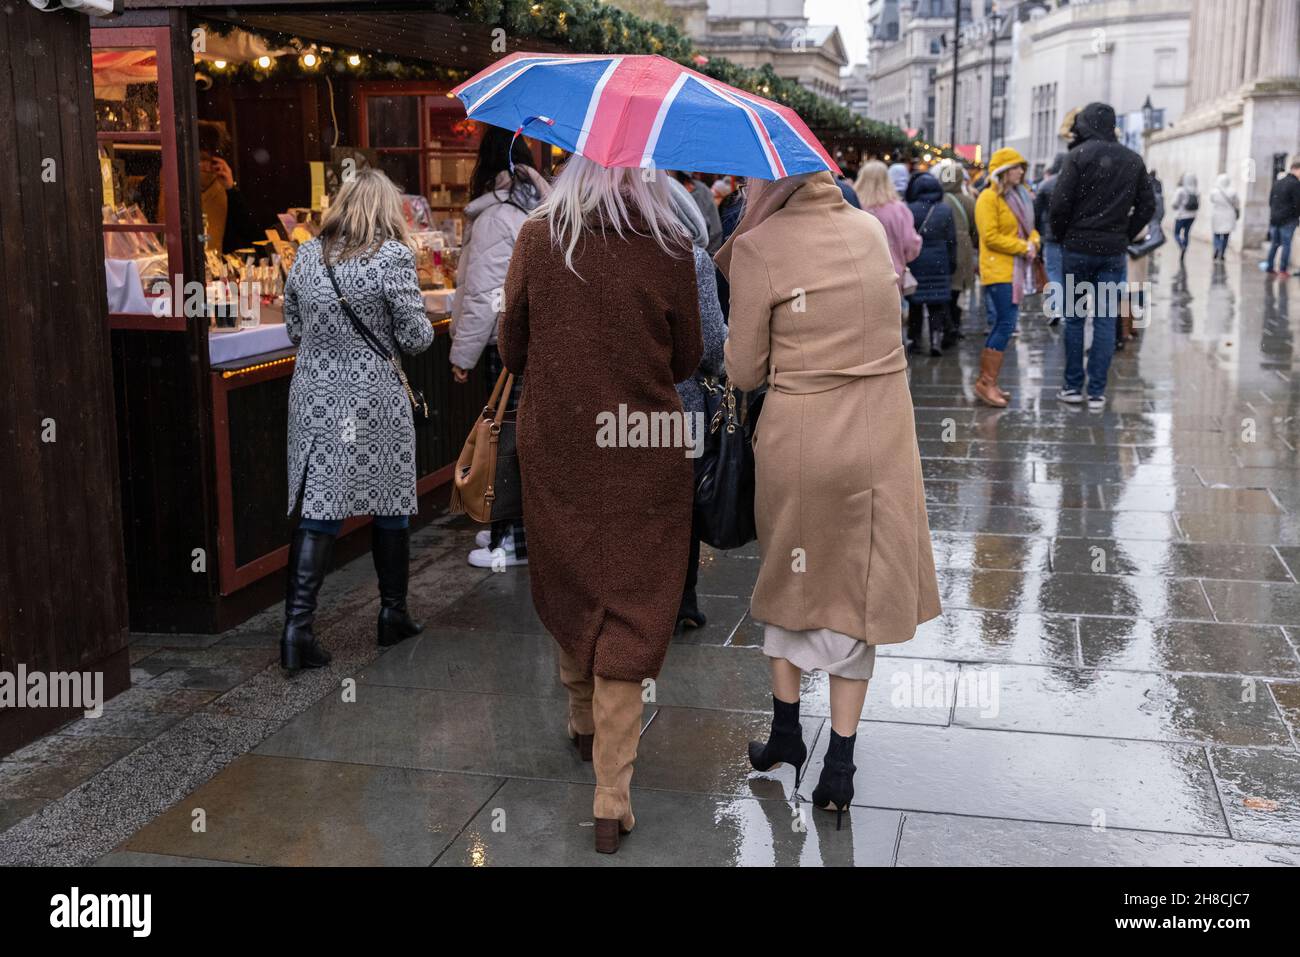 Les acheteurs de Noël à Londres profitent de la liberté actuelle de sortir et de profiter des sites festifs tandis que la variante d'Omicron menace, Royaume-Uni Banque D'Images